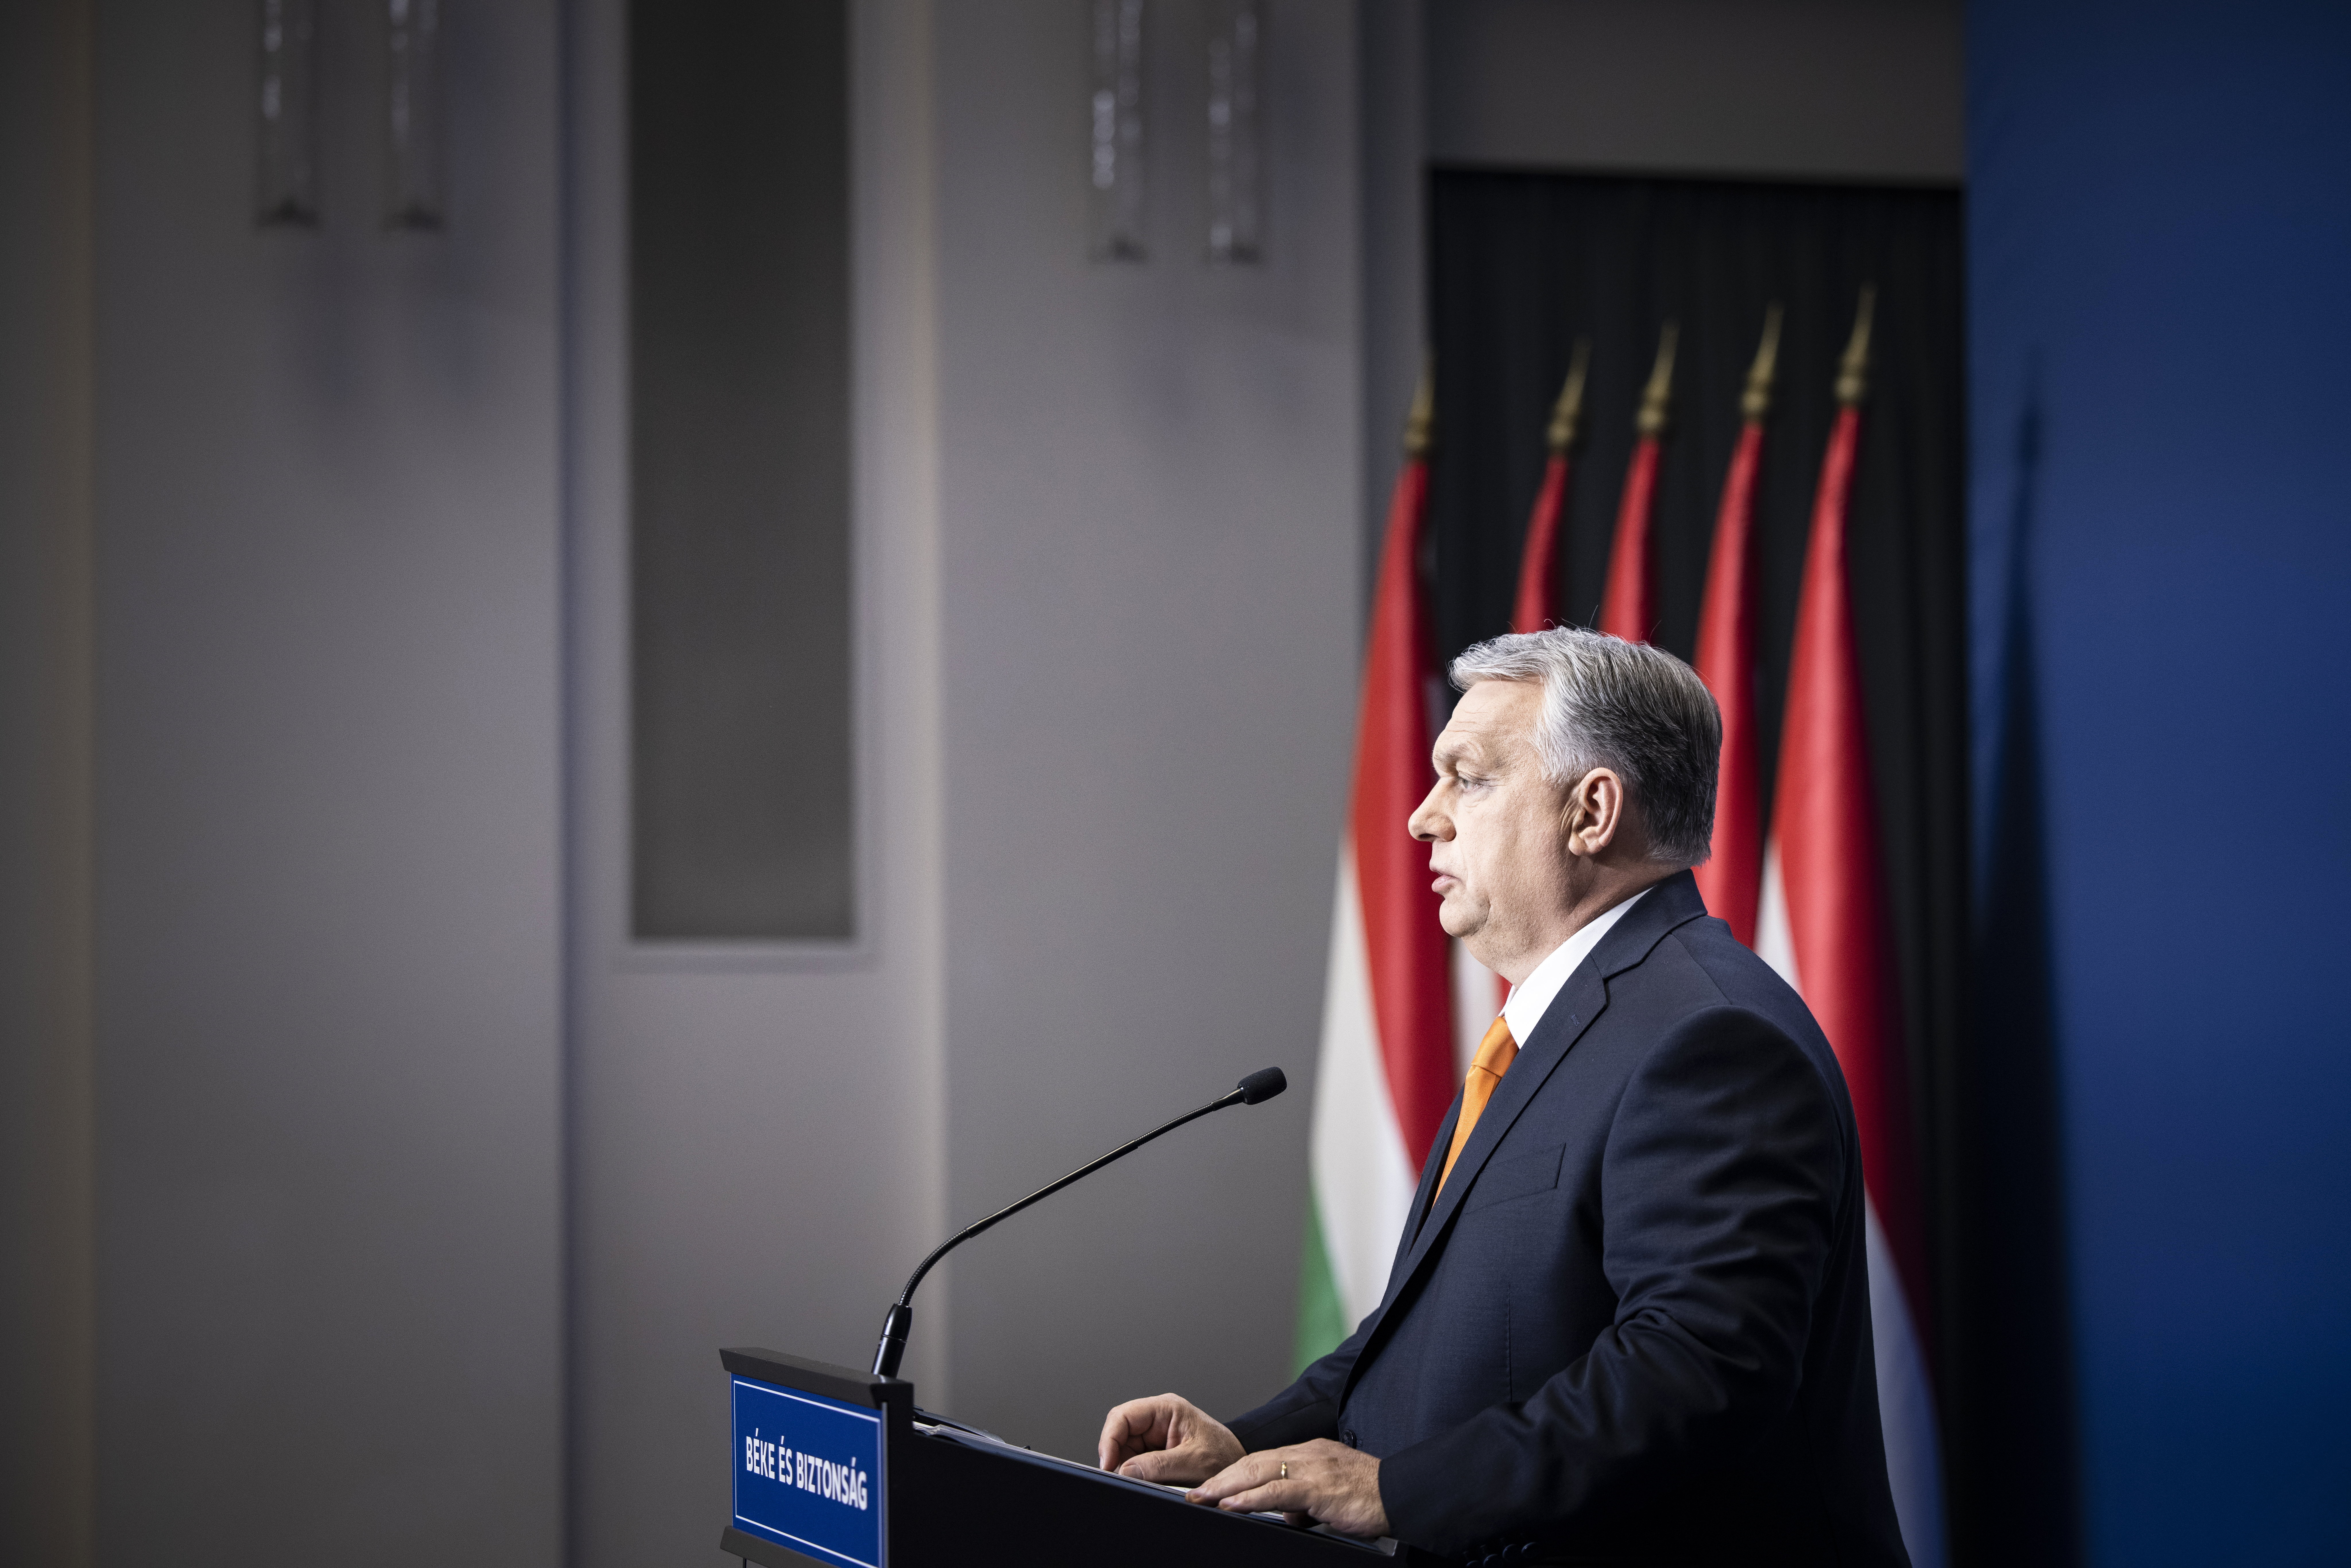 Szertefoszlik Orbán geopolitikai álma? 